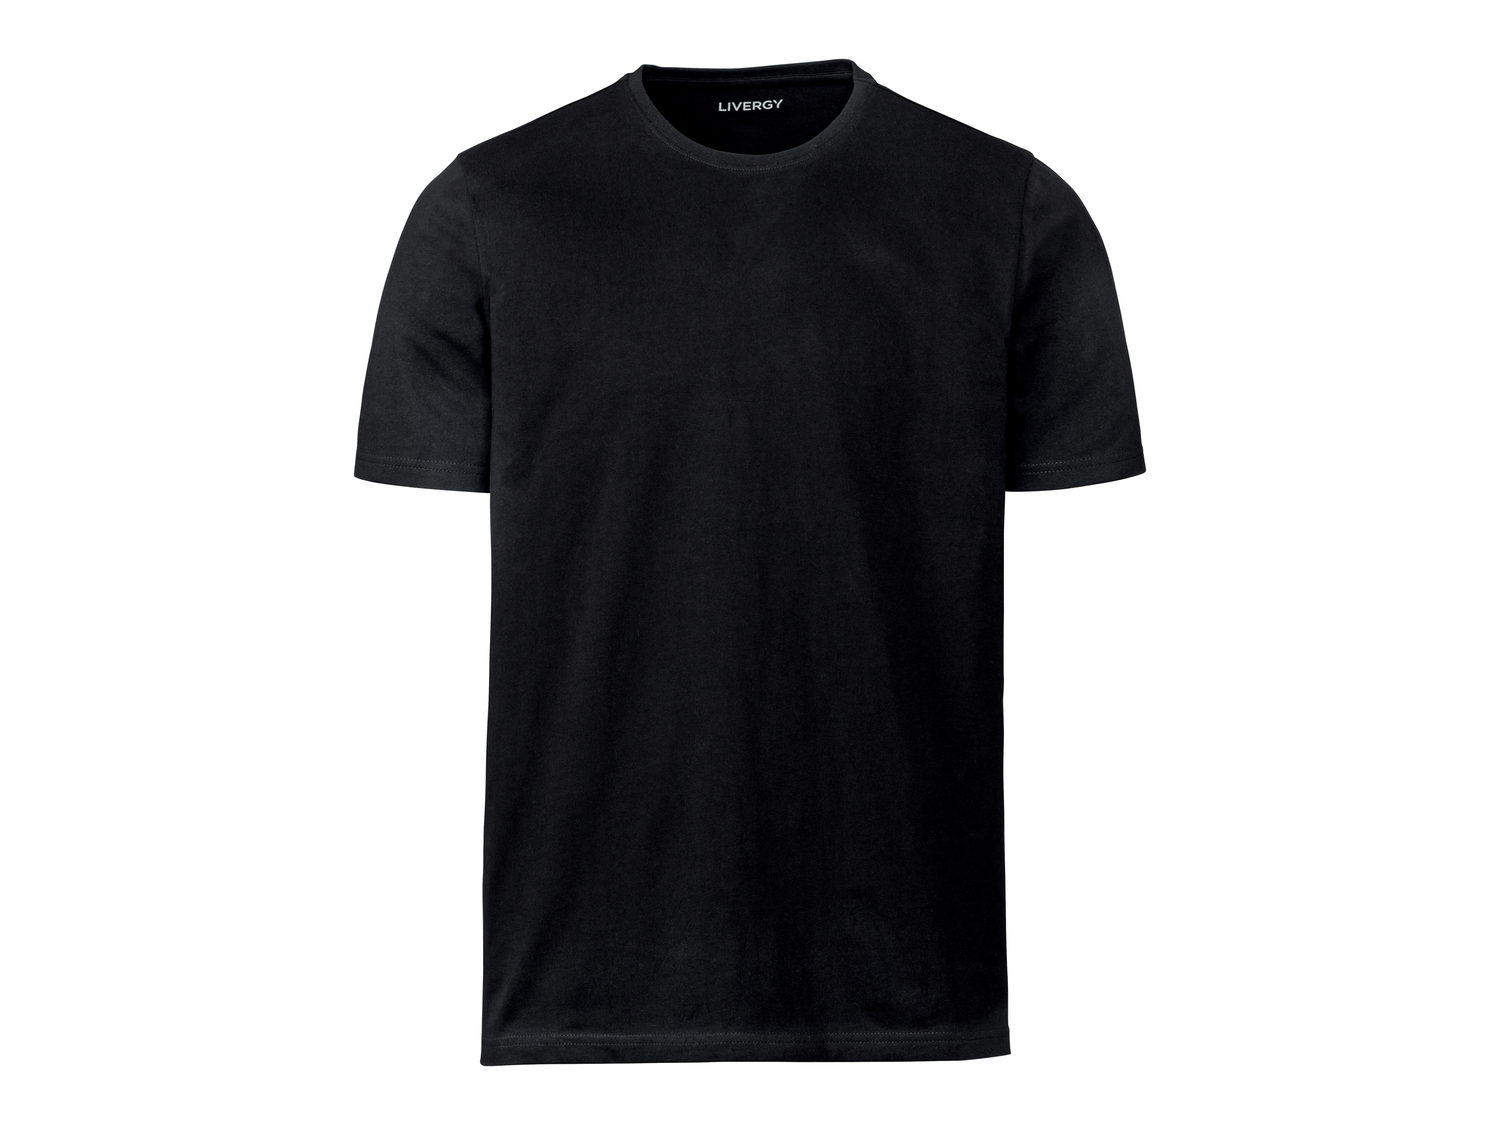 T-shirt da uomo Livergy, prezzo 8.99 € 
3 pezzi - Misure: S-XXL 
- Puro cotone
Prodotto ...